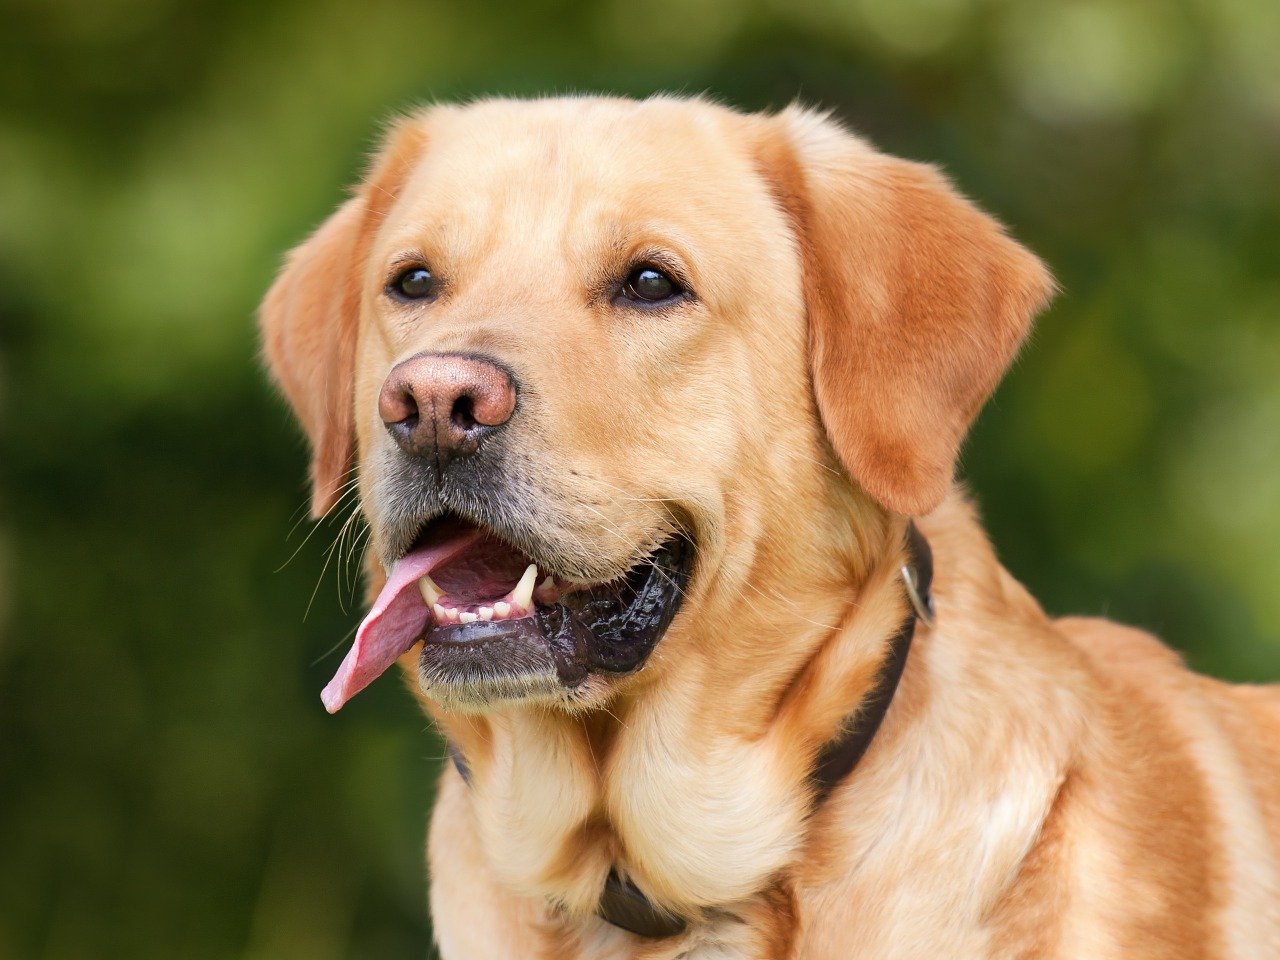 Higiena oczu, uszu i zębów u psa